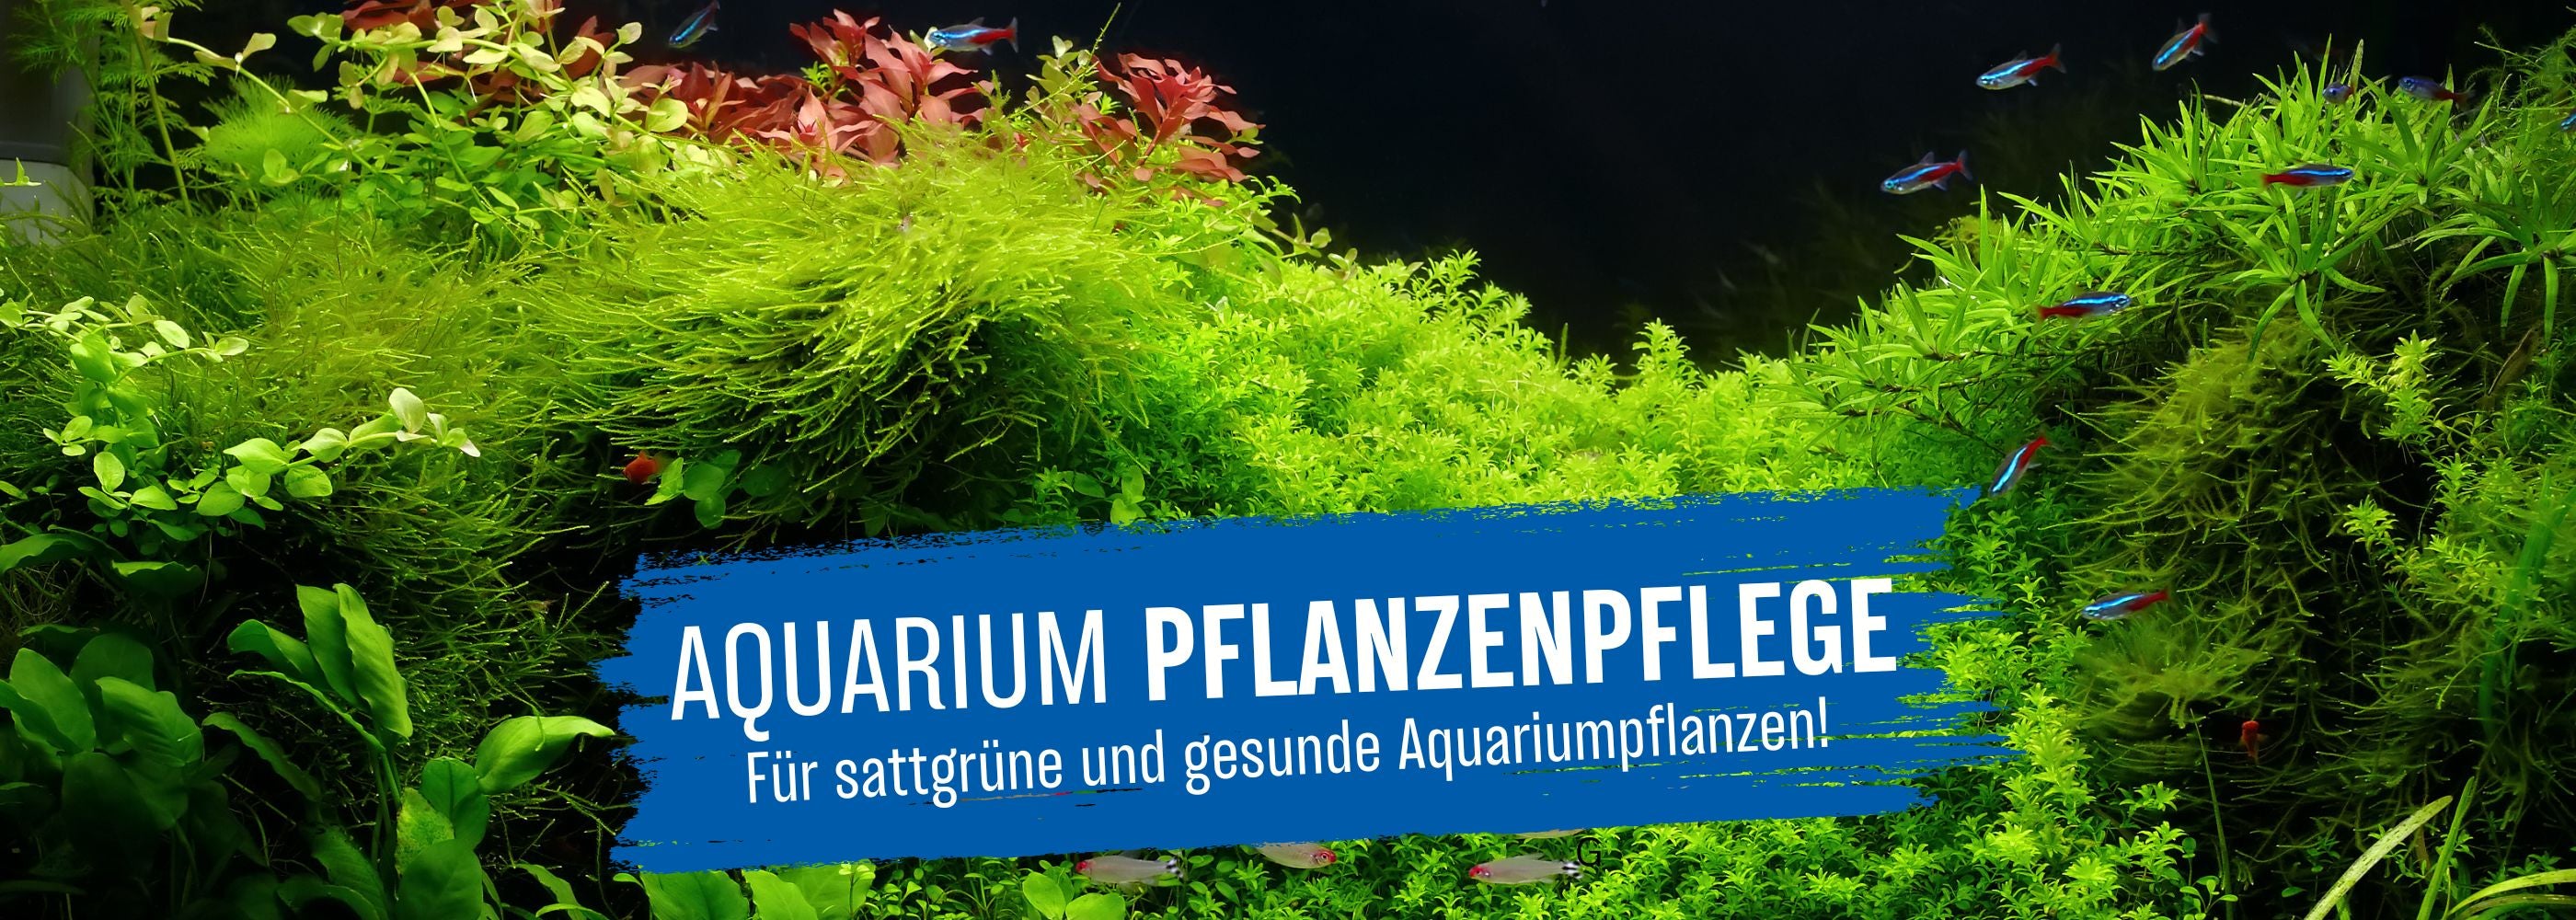 Aquasan Kategoriebild Aquarium Pflanzenpflege desktop